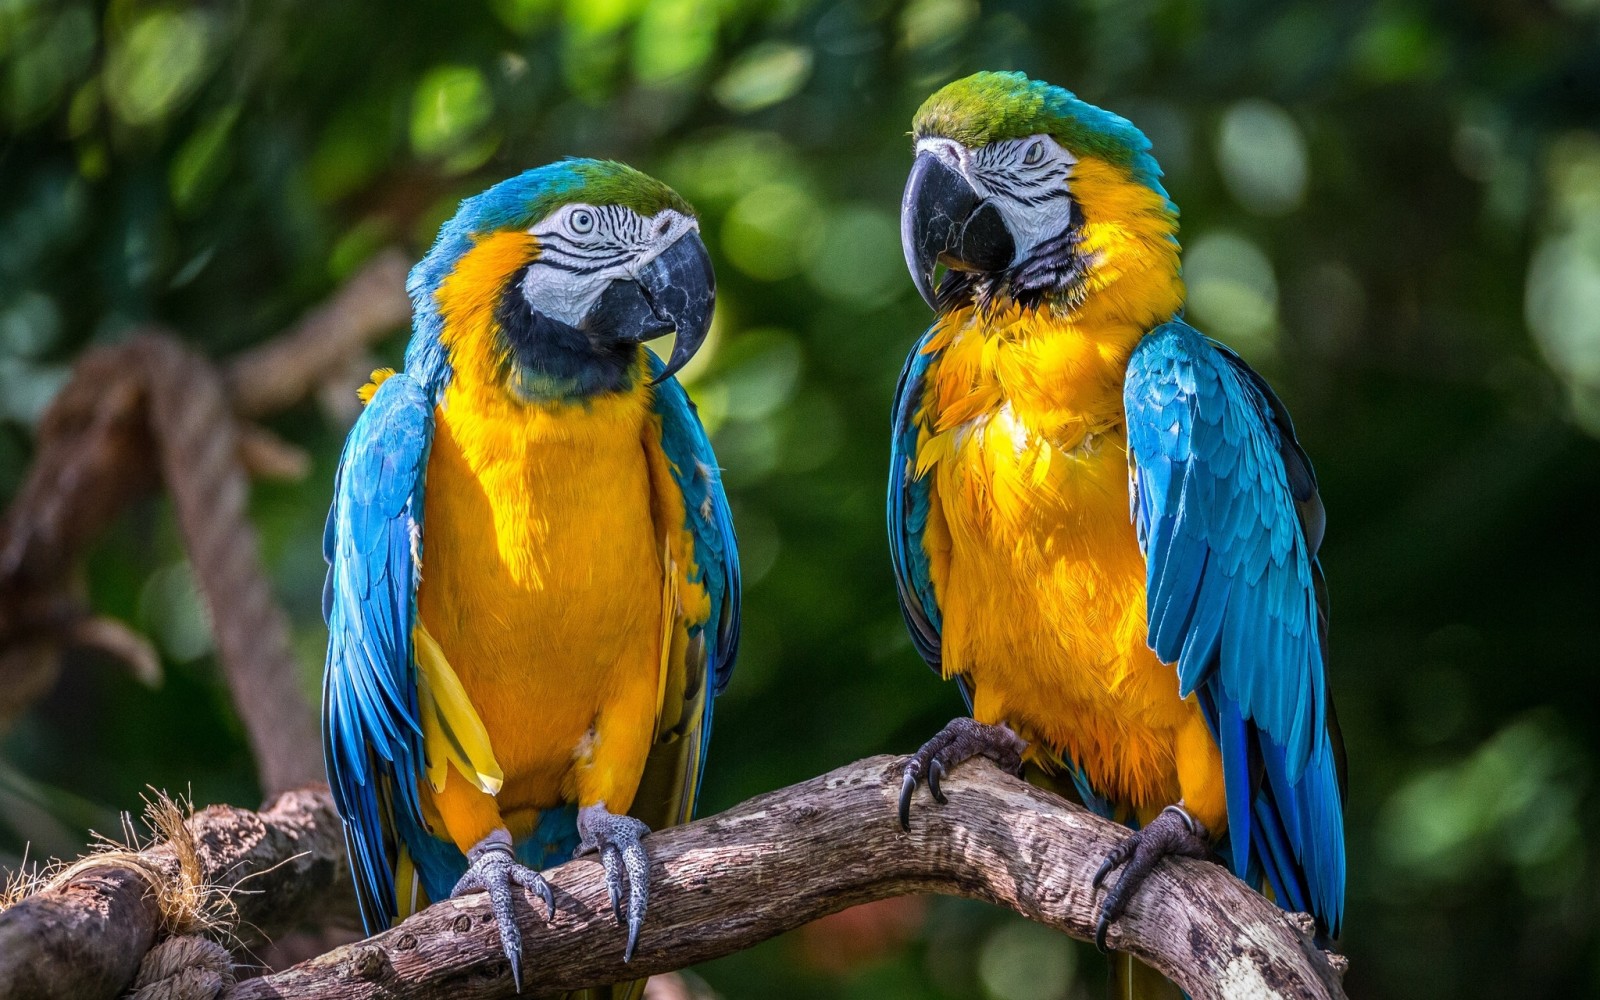 คู่รัก, นก, นกแก้ว, ara, มาคอว์สีฟ้าและสีเหลือง